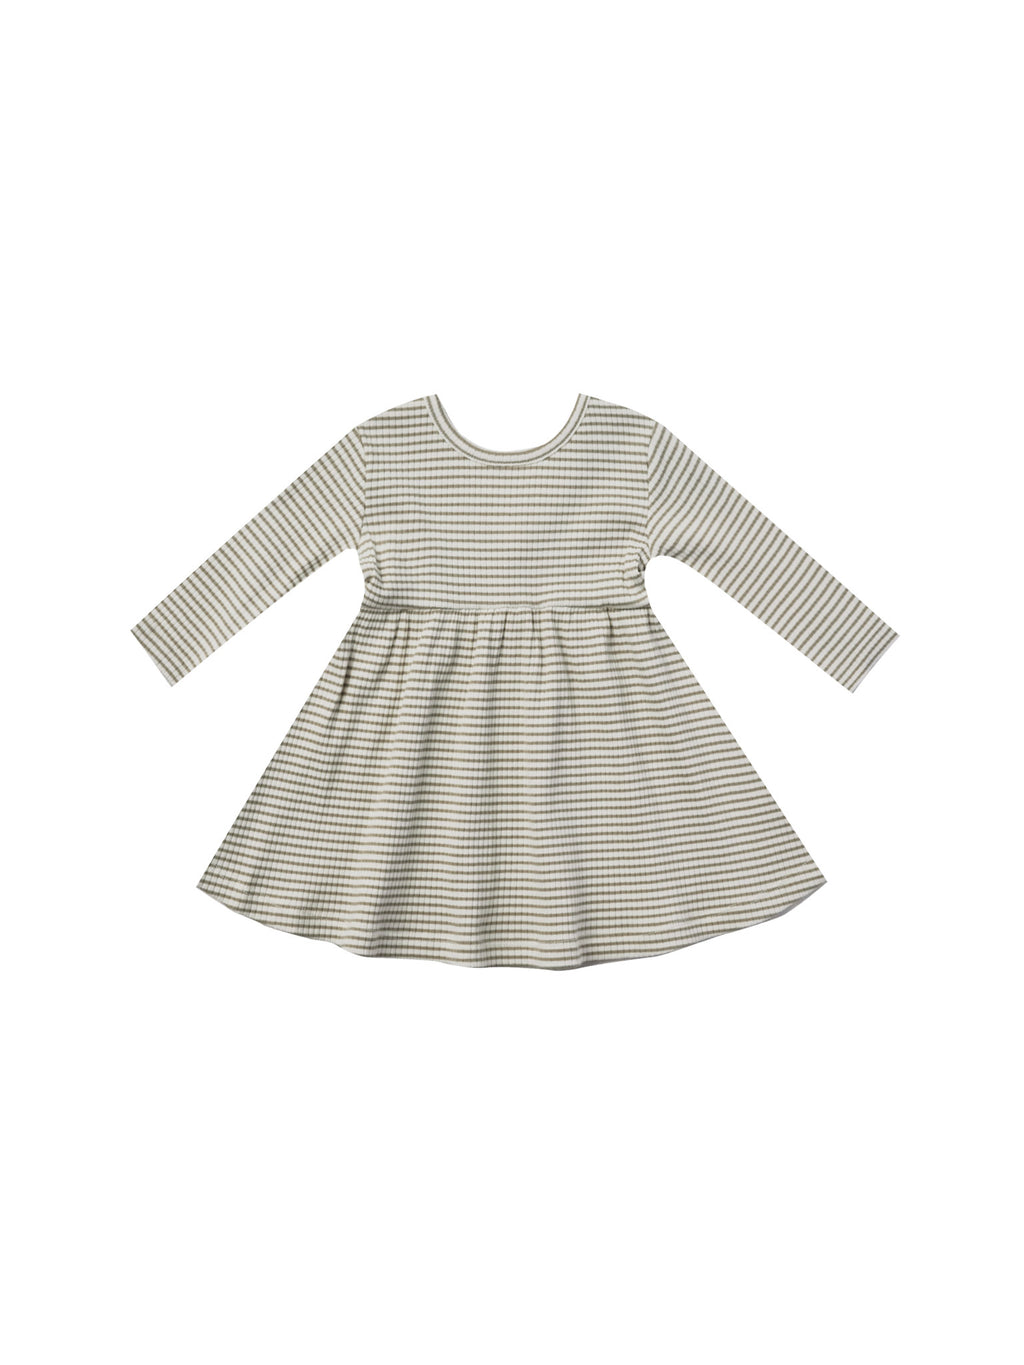 Fern Stripe Dress & Fern Bloomer Set